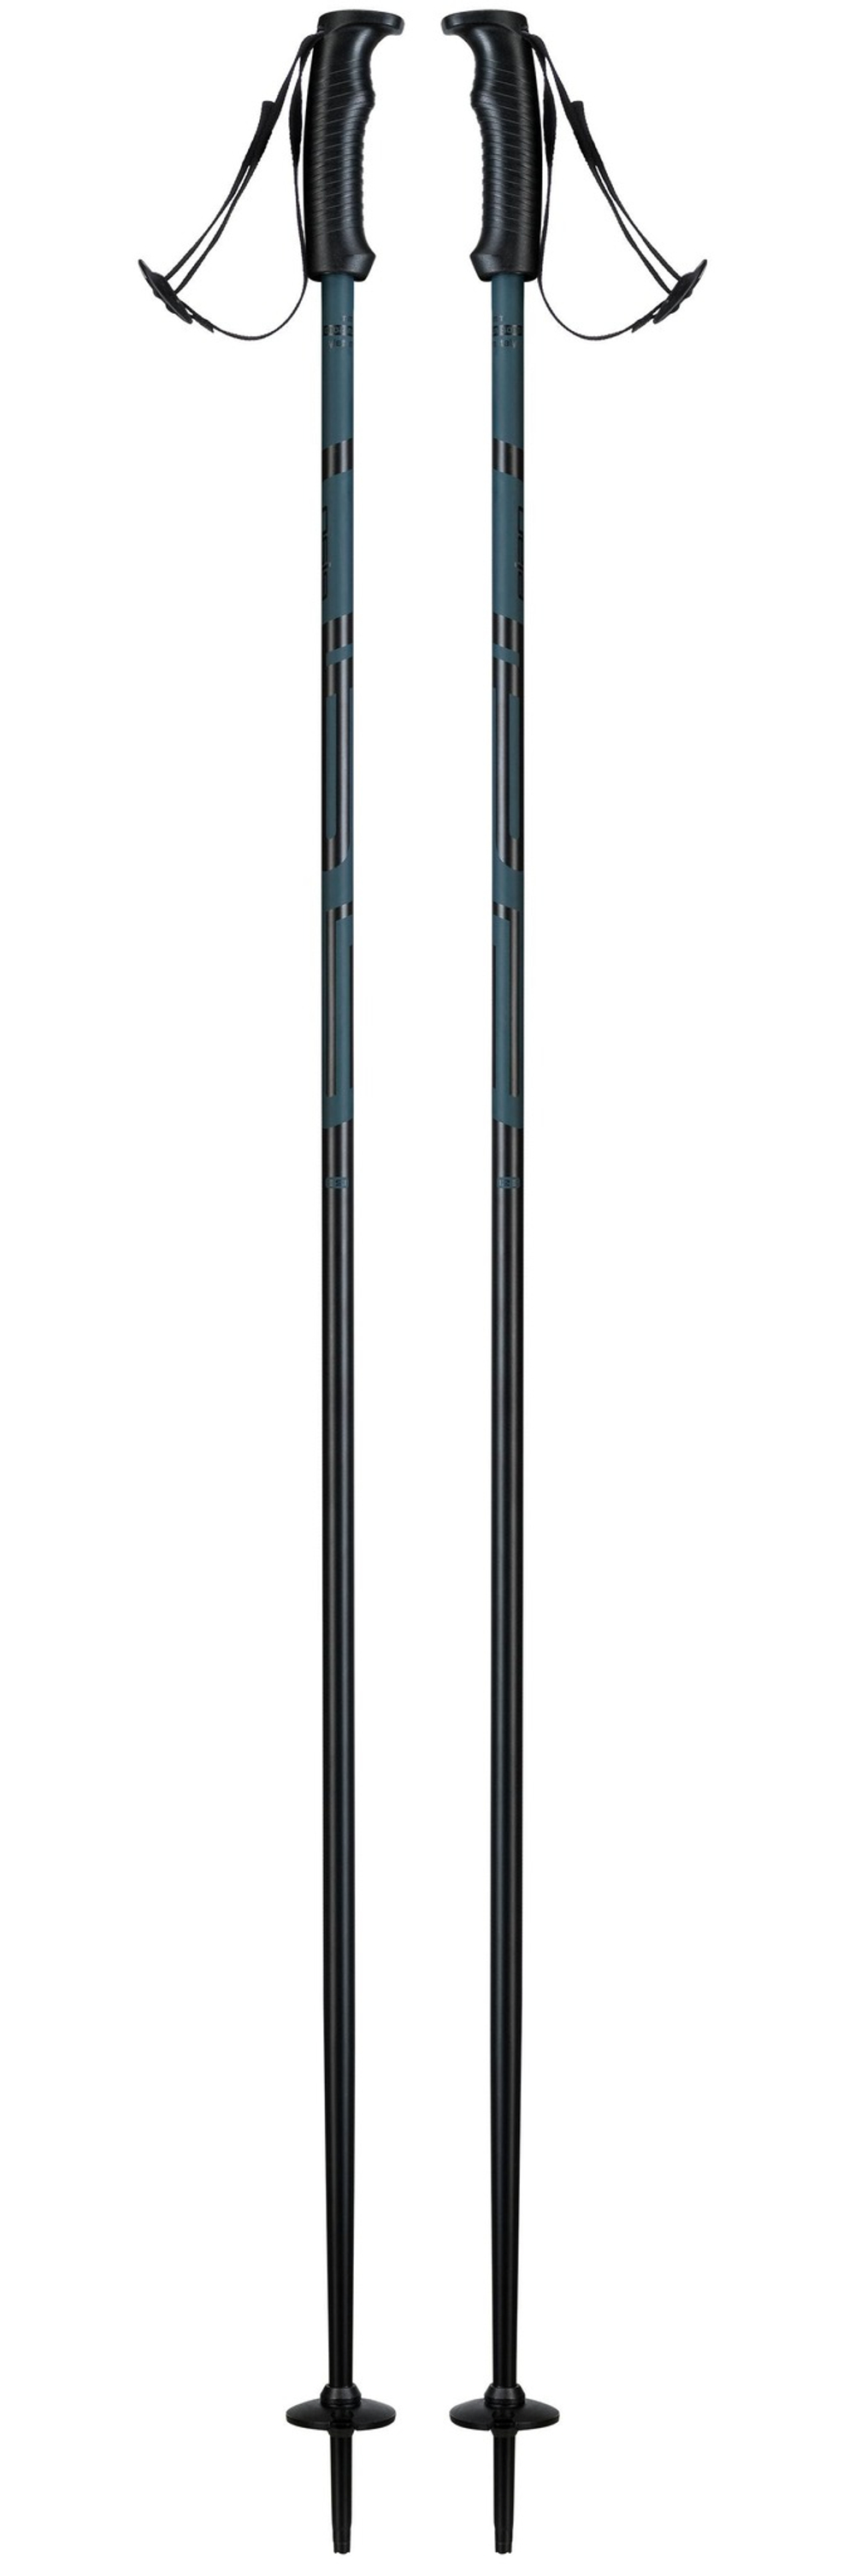 Горнолыжные палки ELAN Hotrod Black (см:125)